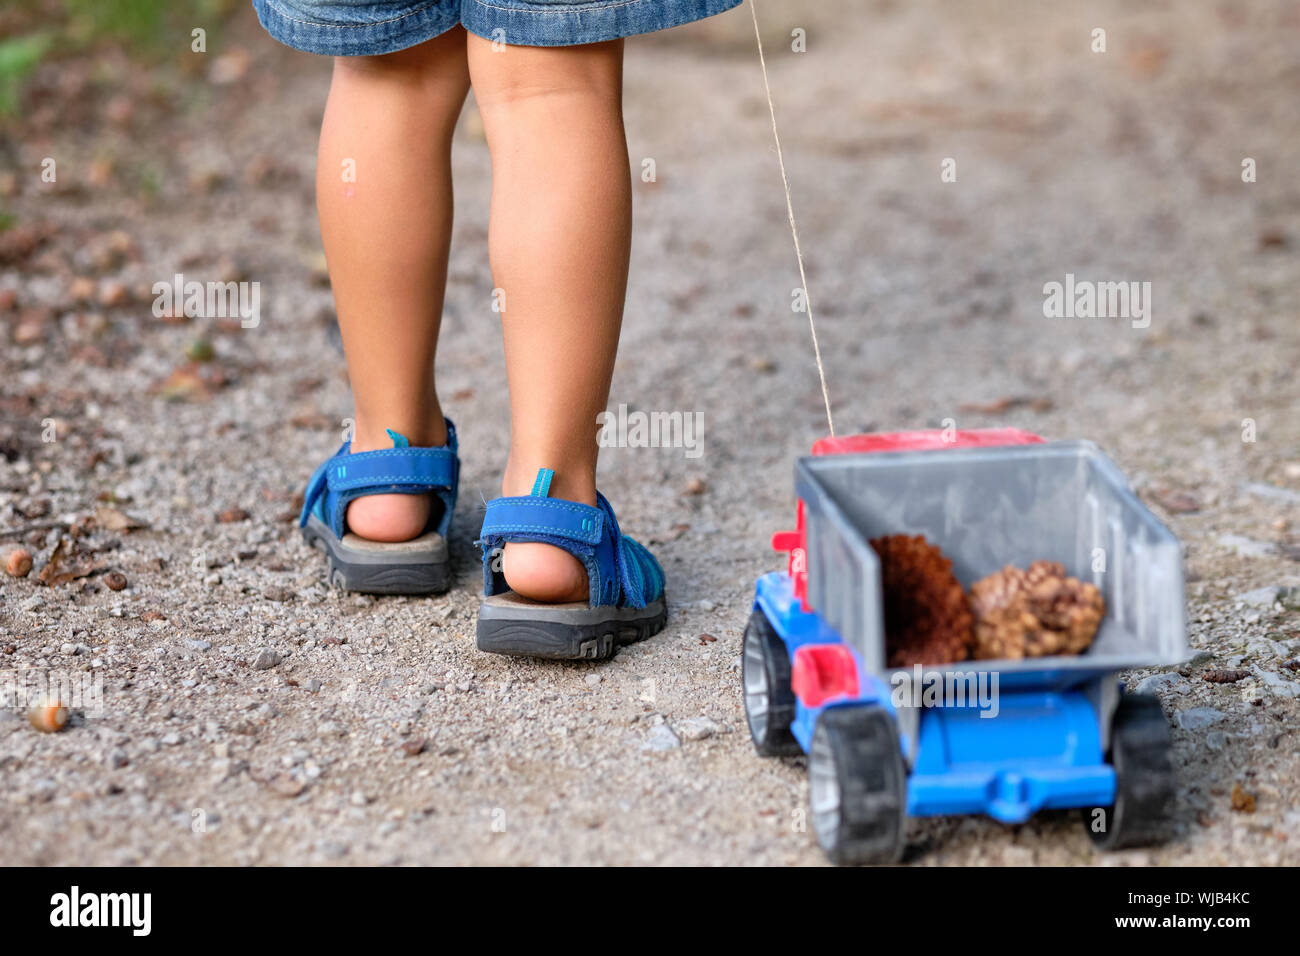 Rückansicht des unteren Abschnitt von einem 3-4 jährigen Kind in kurzen Hosen im Sommer Ziehen einer Spielzeug-LKW mit Kegel in Es Stockfoto